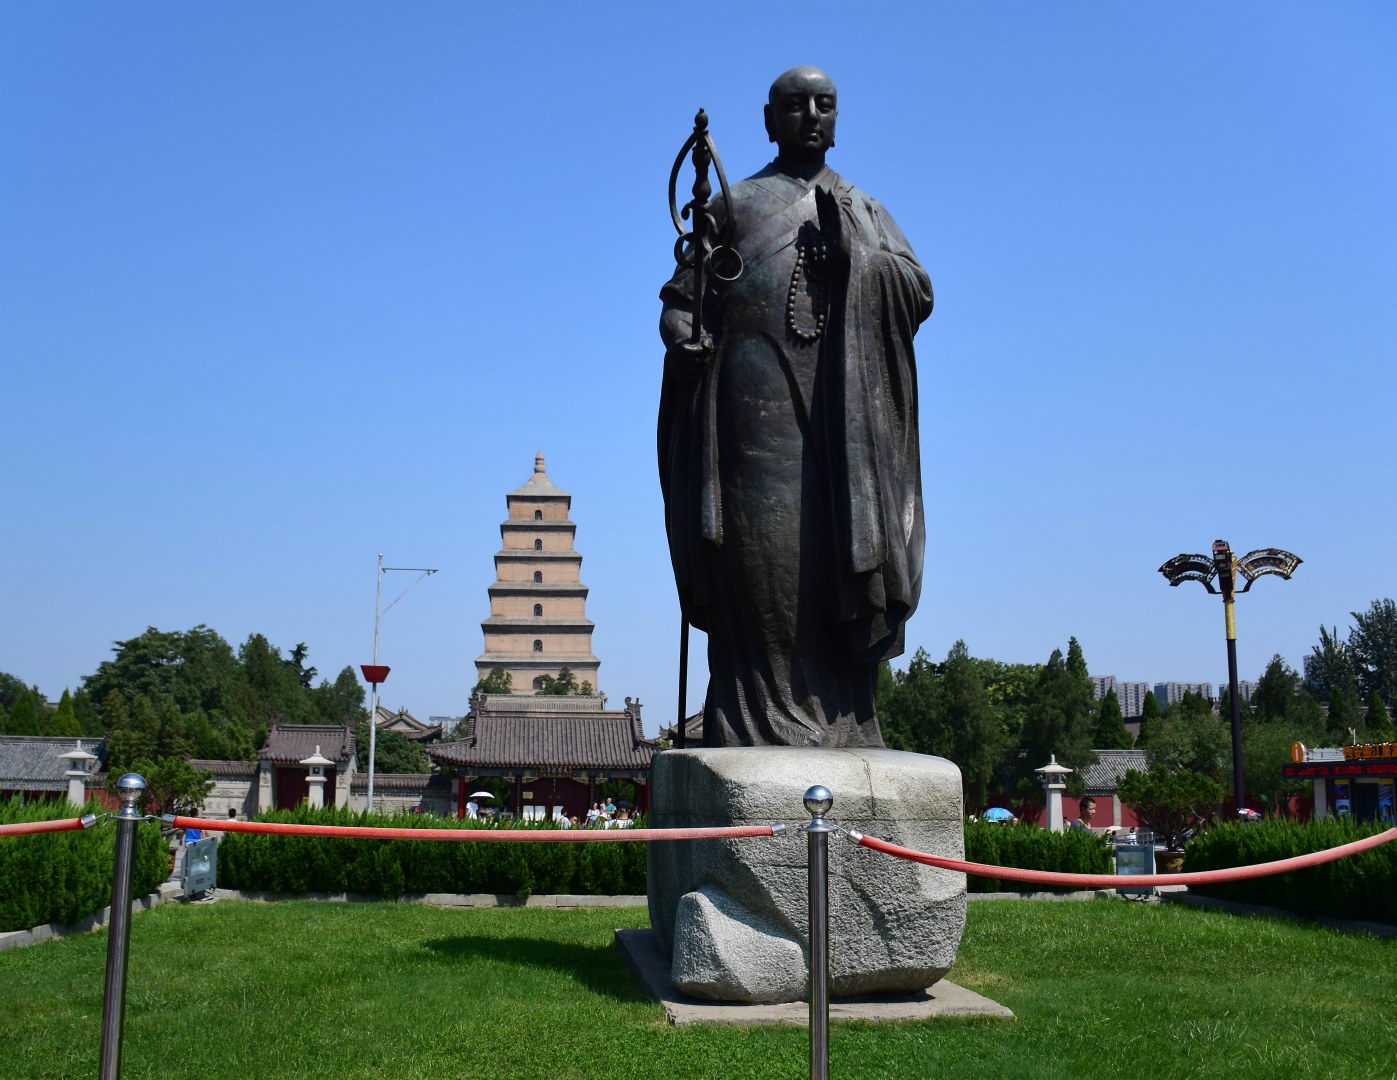 Statue of the monk Xuanzang, Xi'an